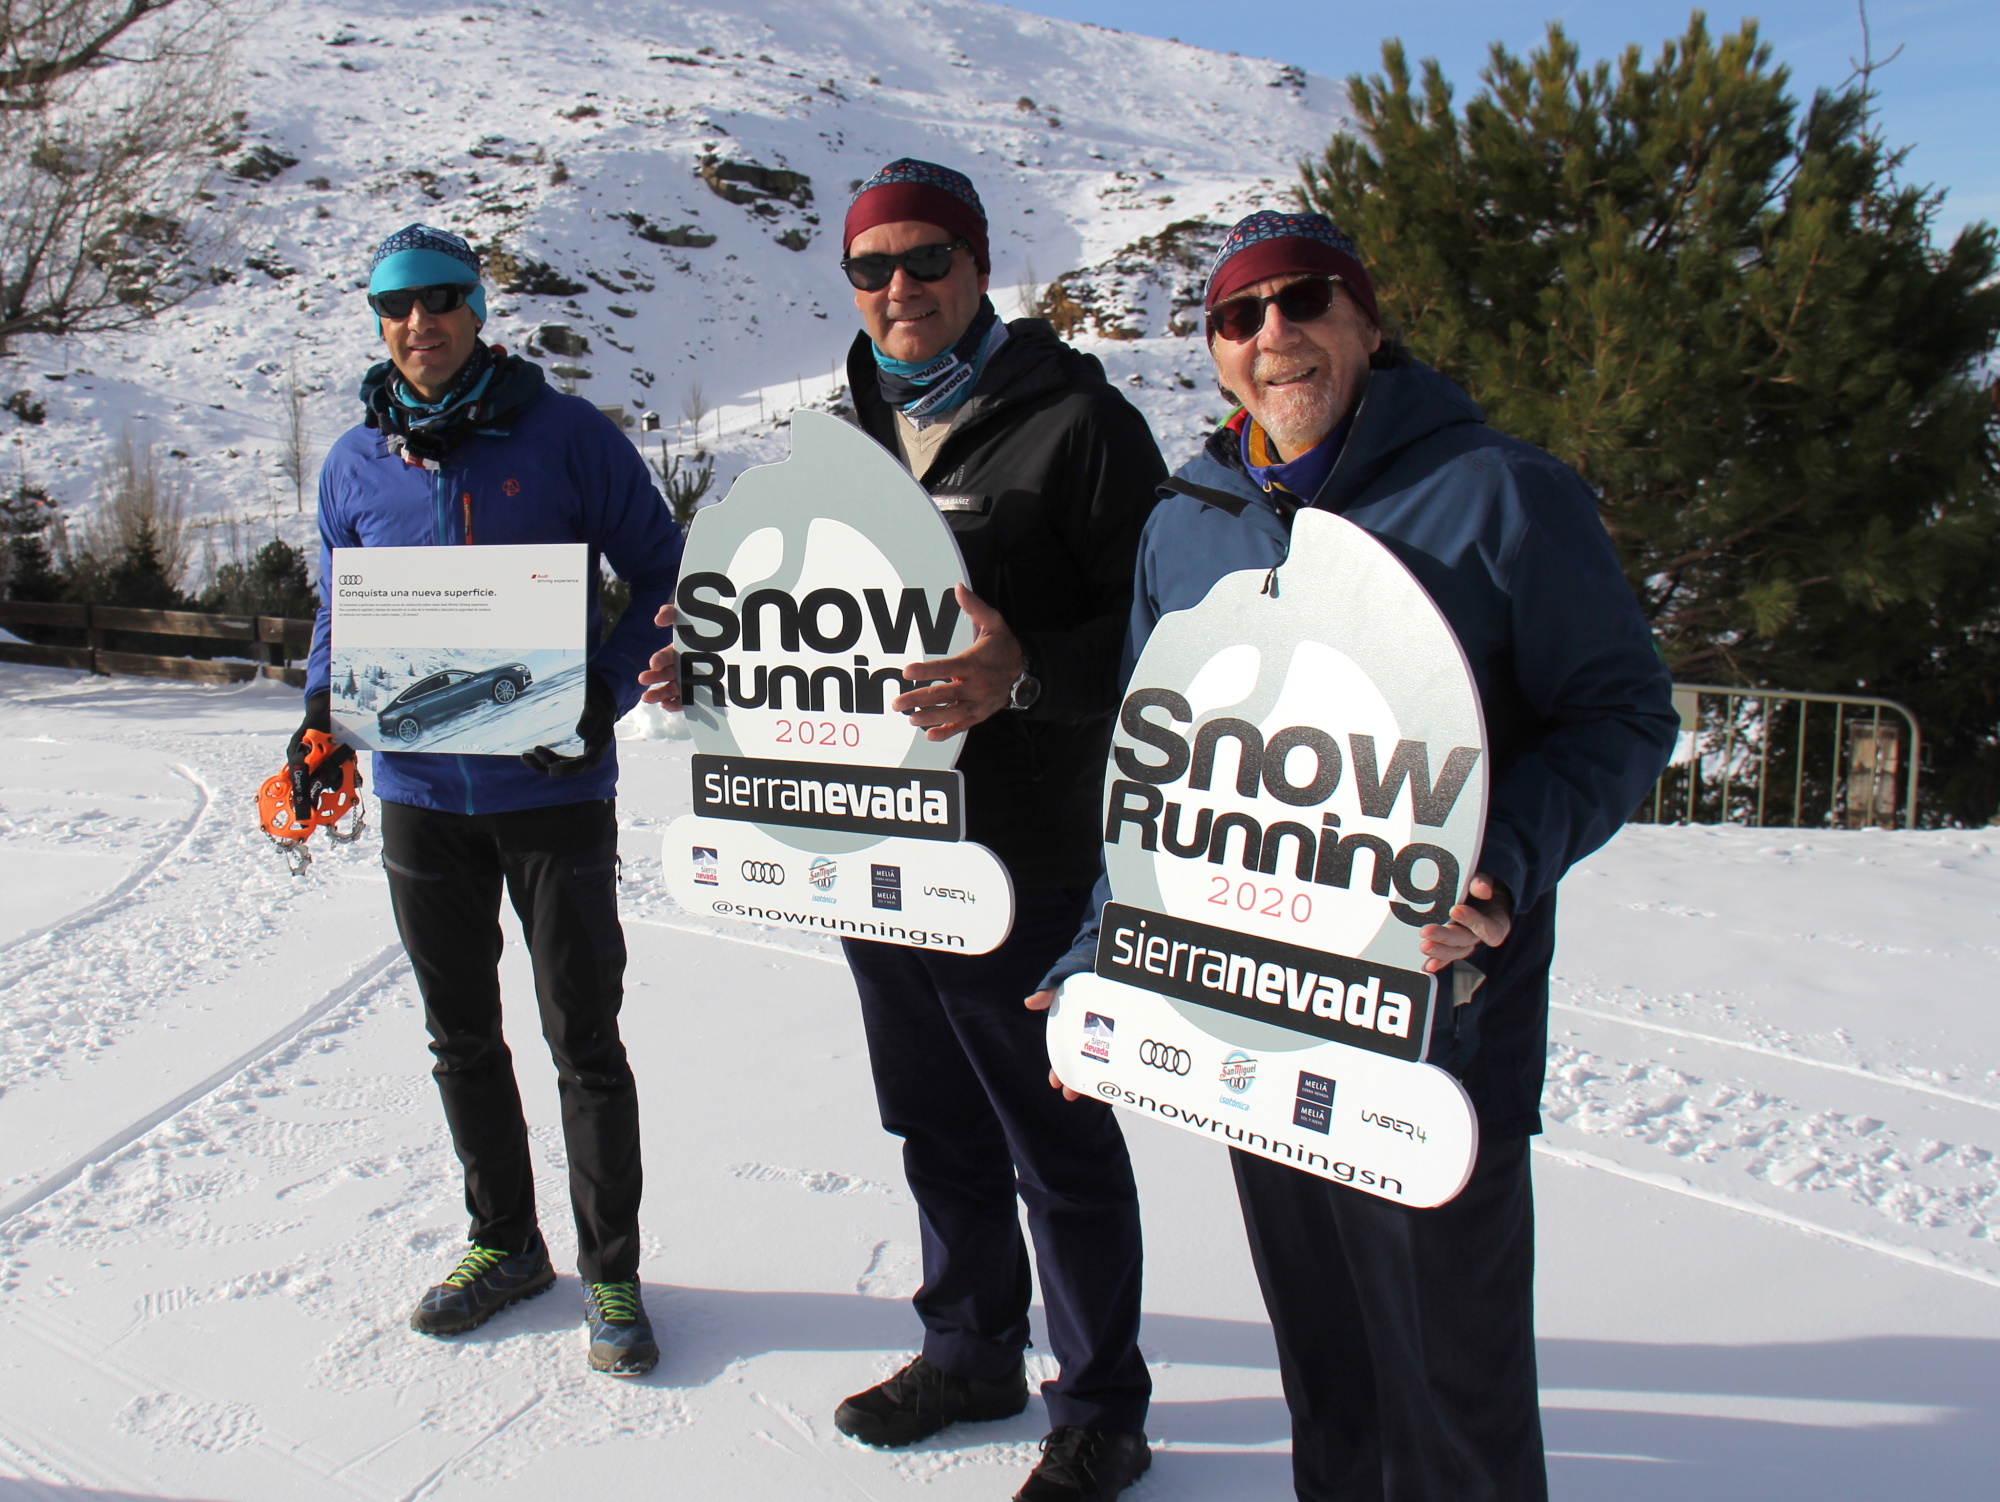 Llega la novena edición del Snow Runing de Sierra Nevada con récord de participación